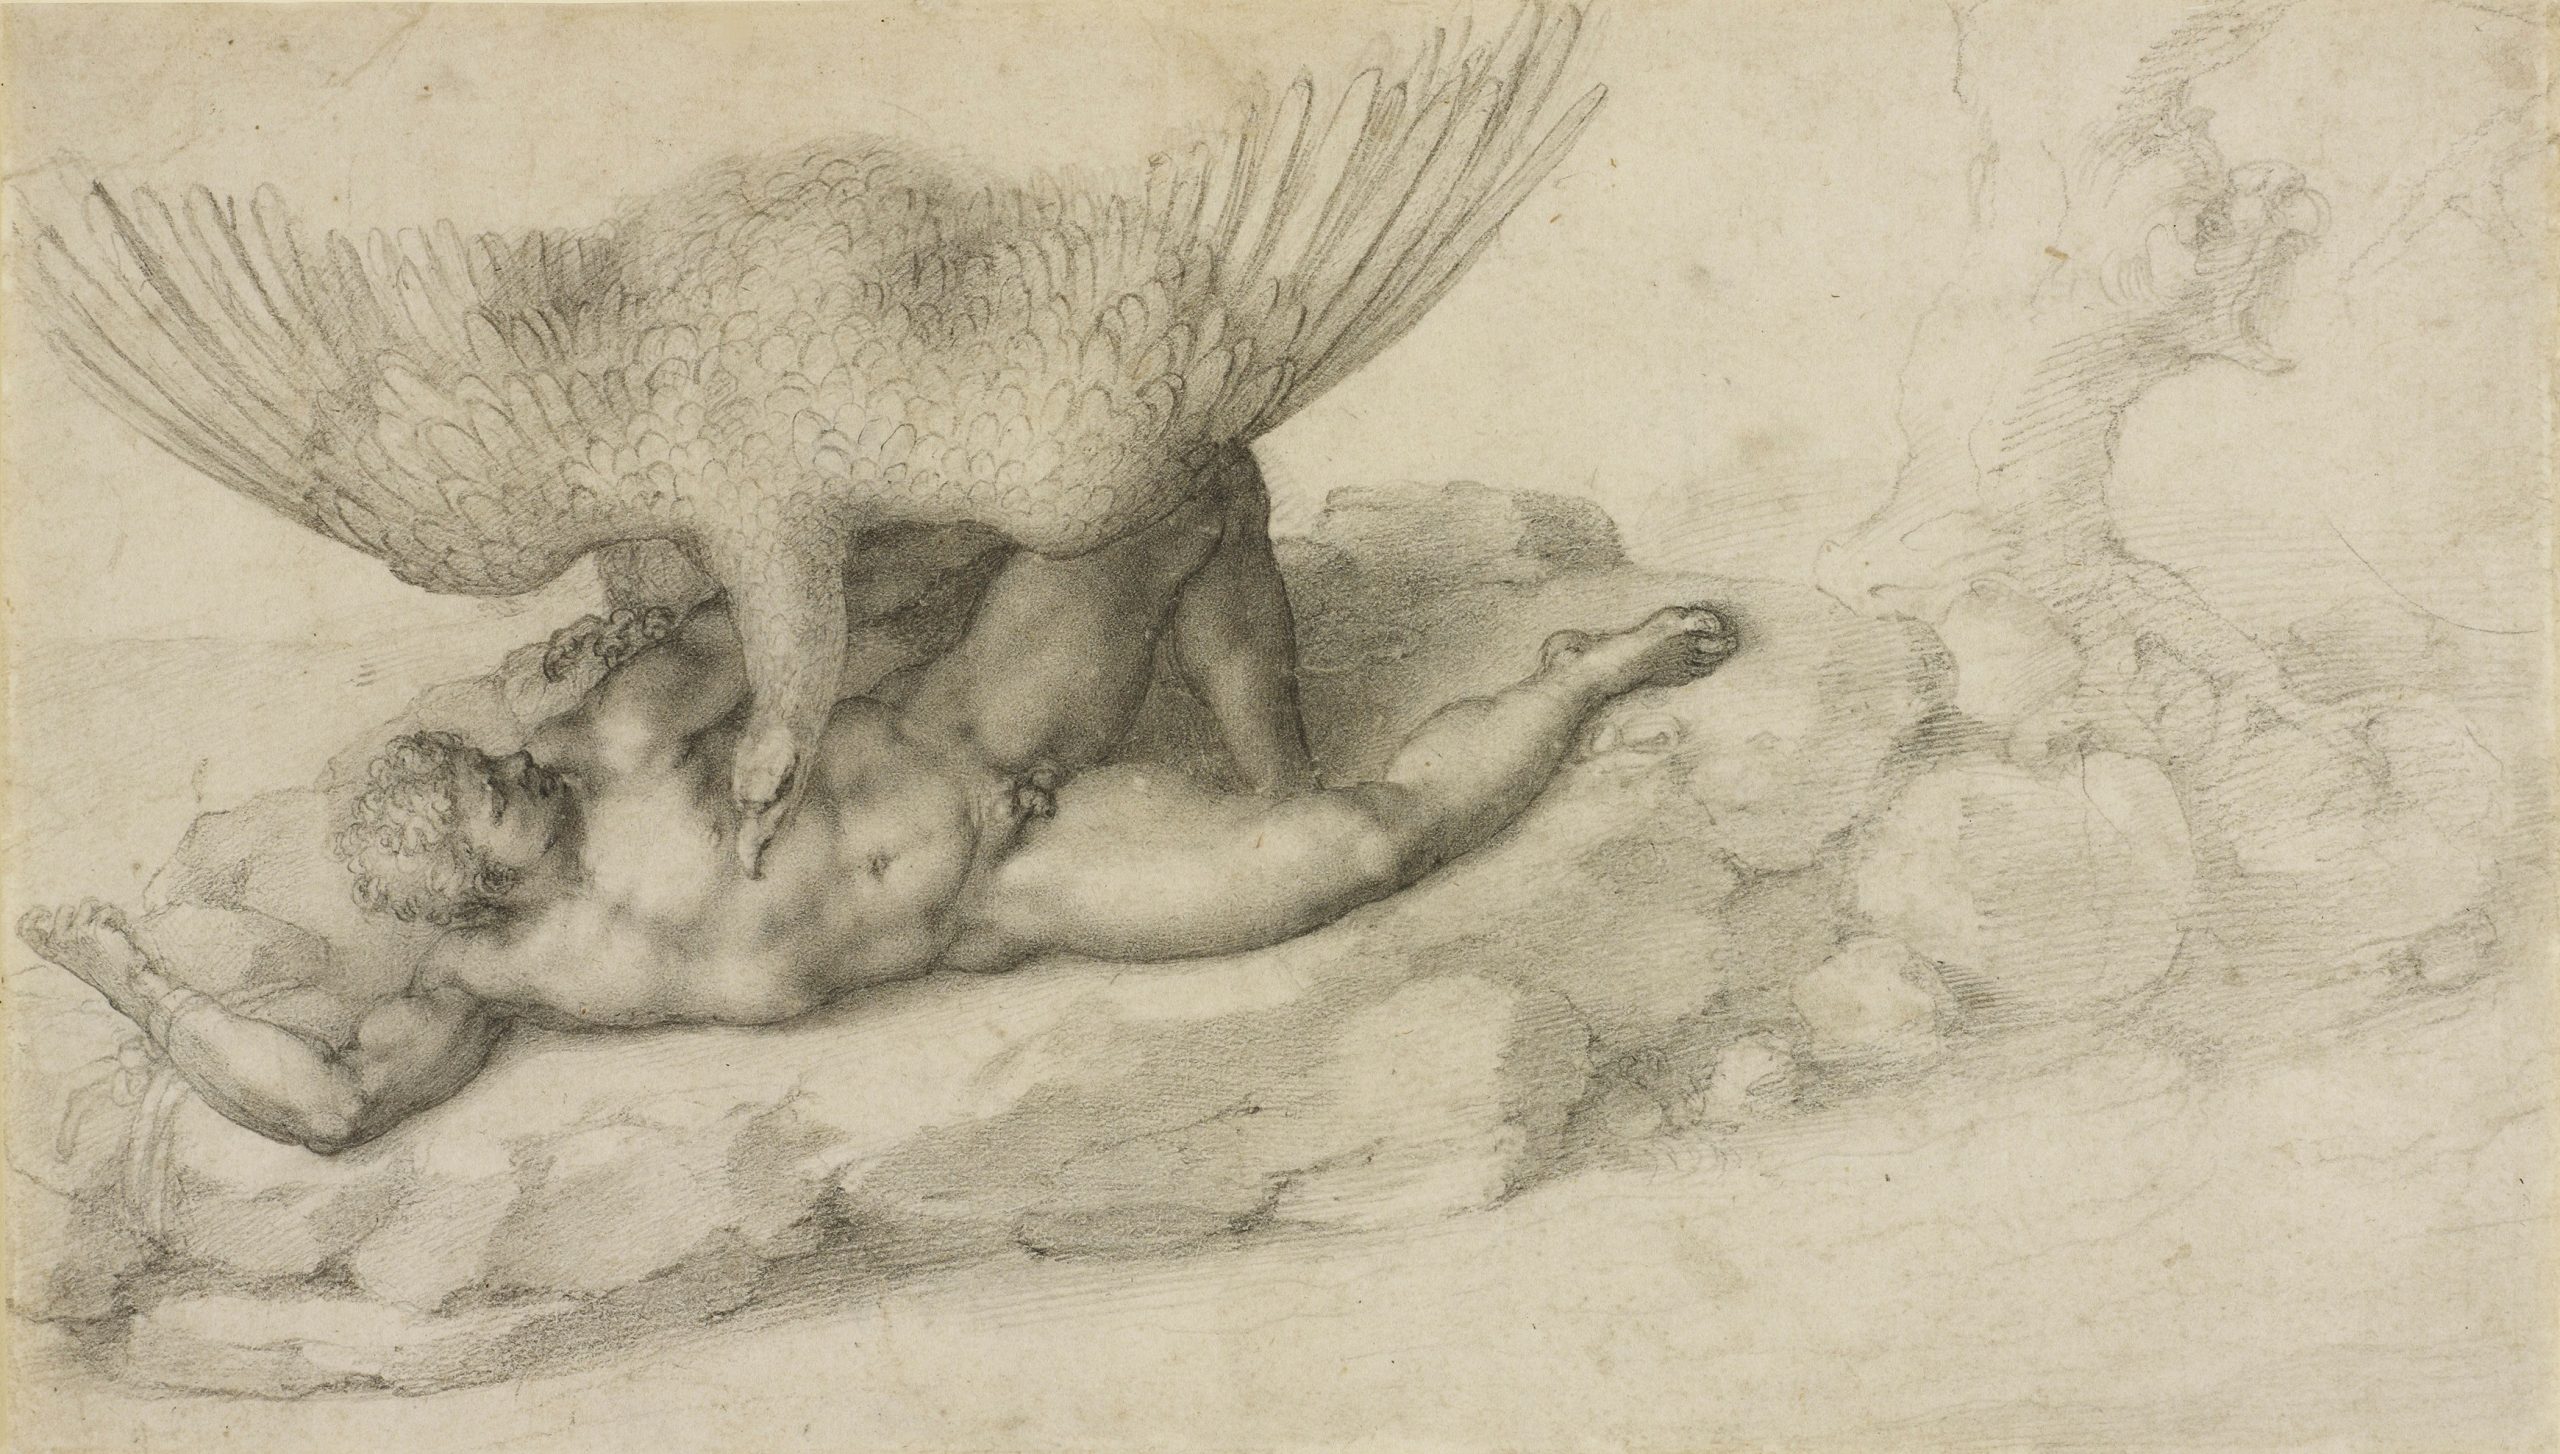 El castigo de Ticio de Michelangelo, 1532